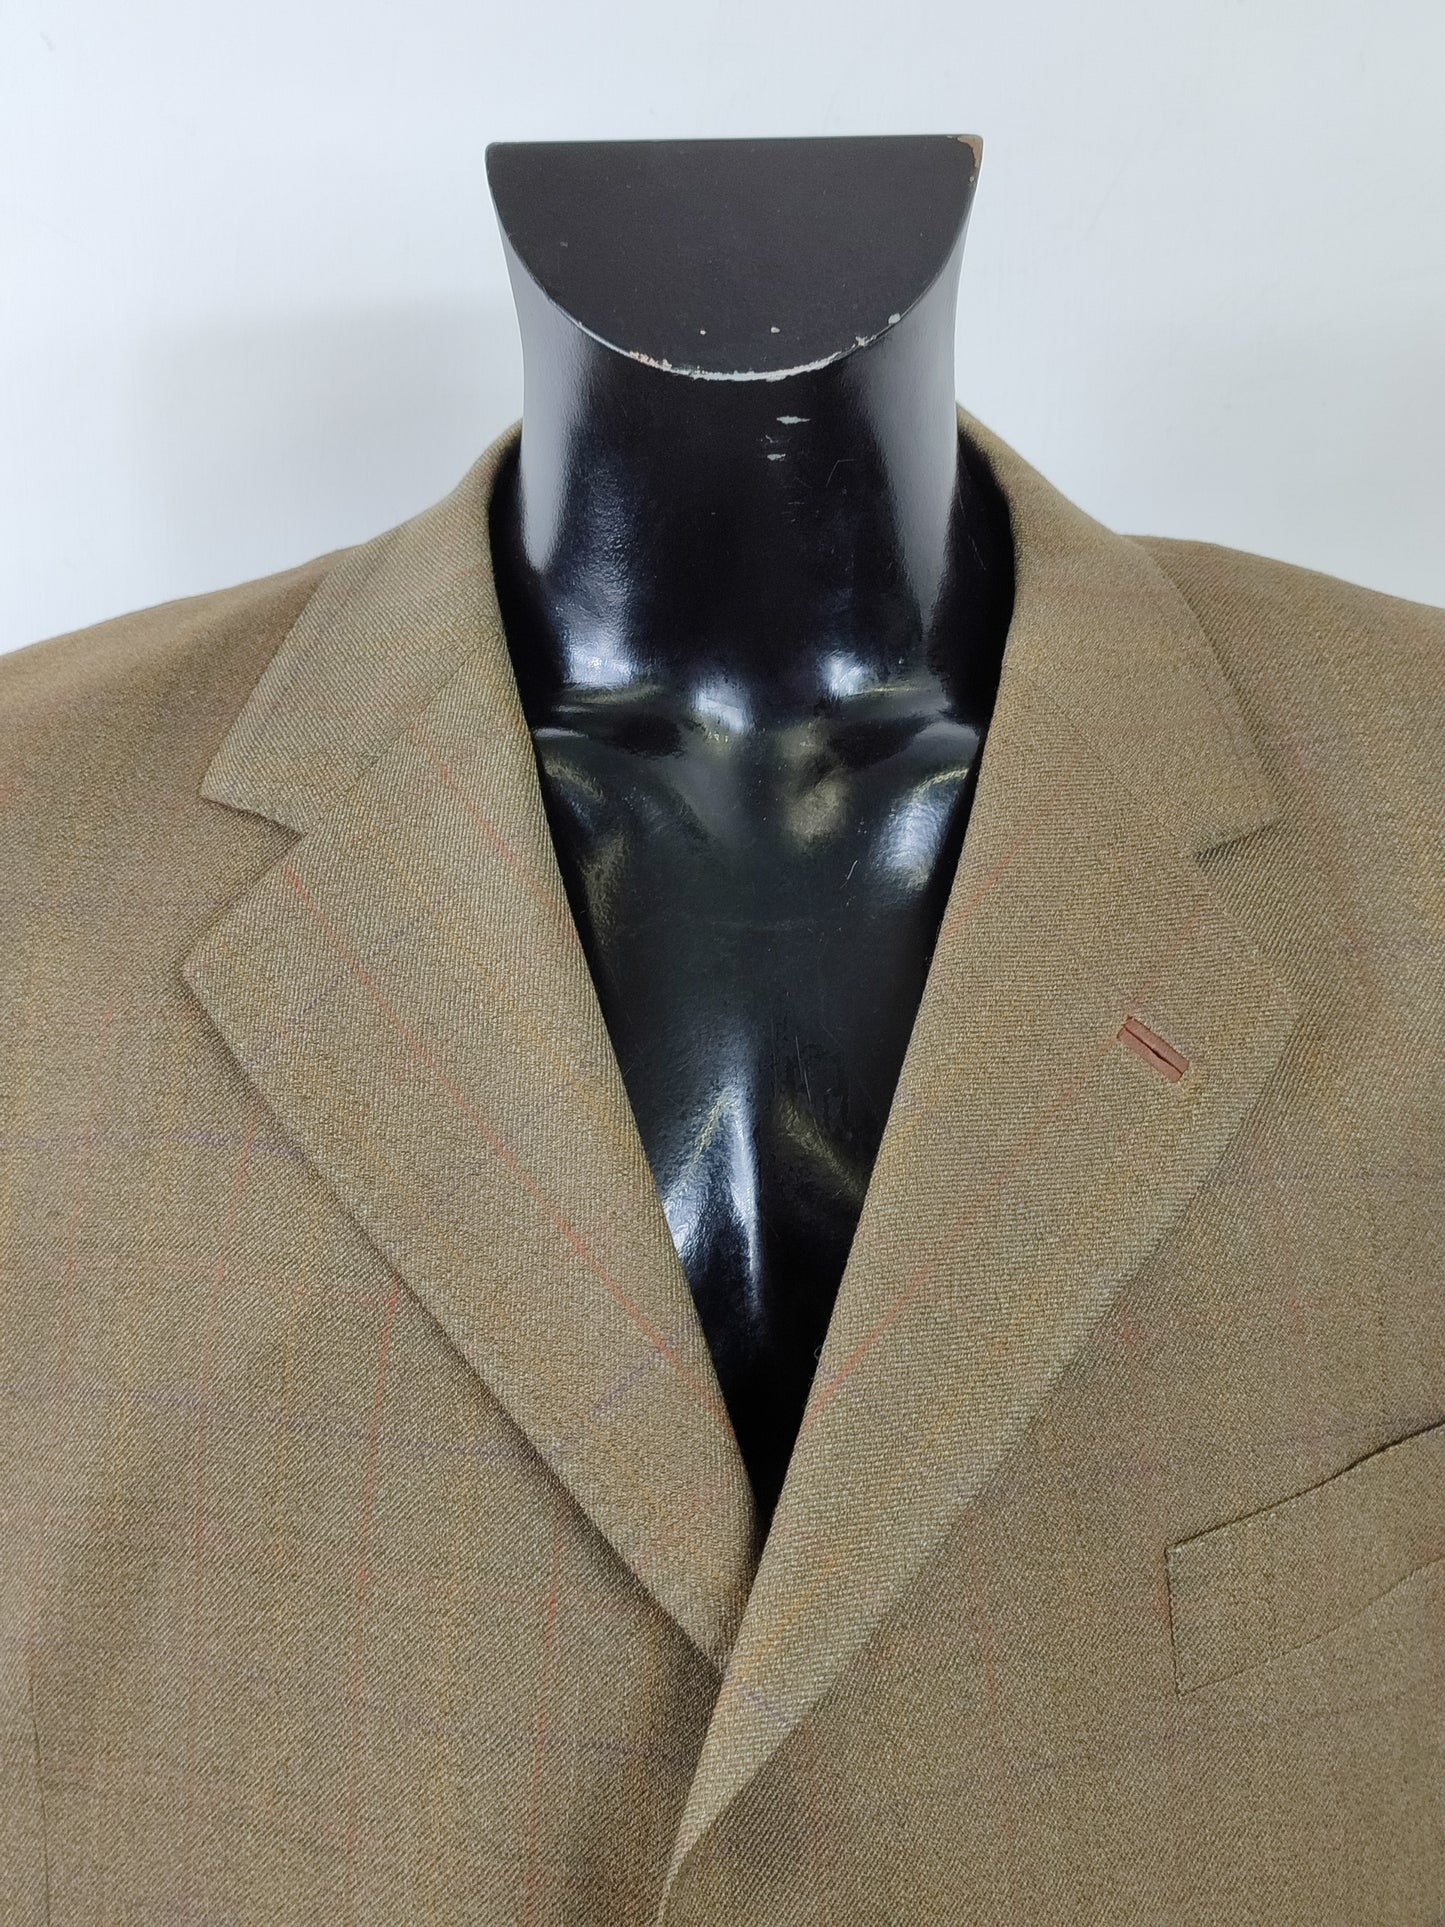 Giacca Blazer Barbour Uomo in lana XL - Man Wool blazer Jacket Size XL c46/117 cm